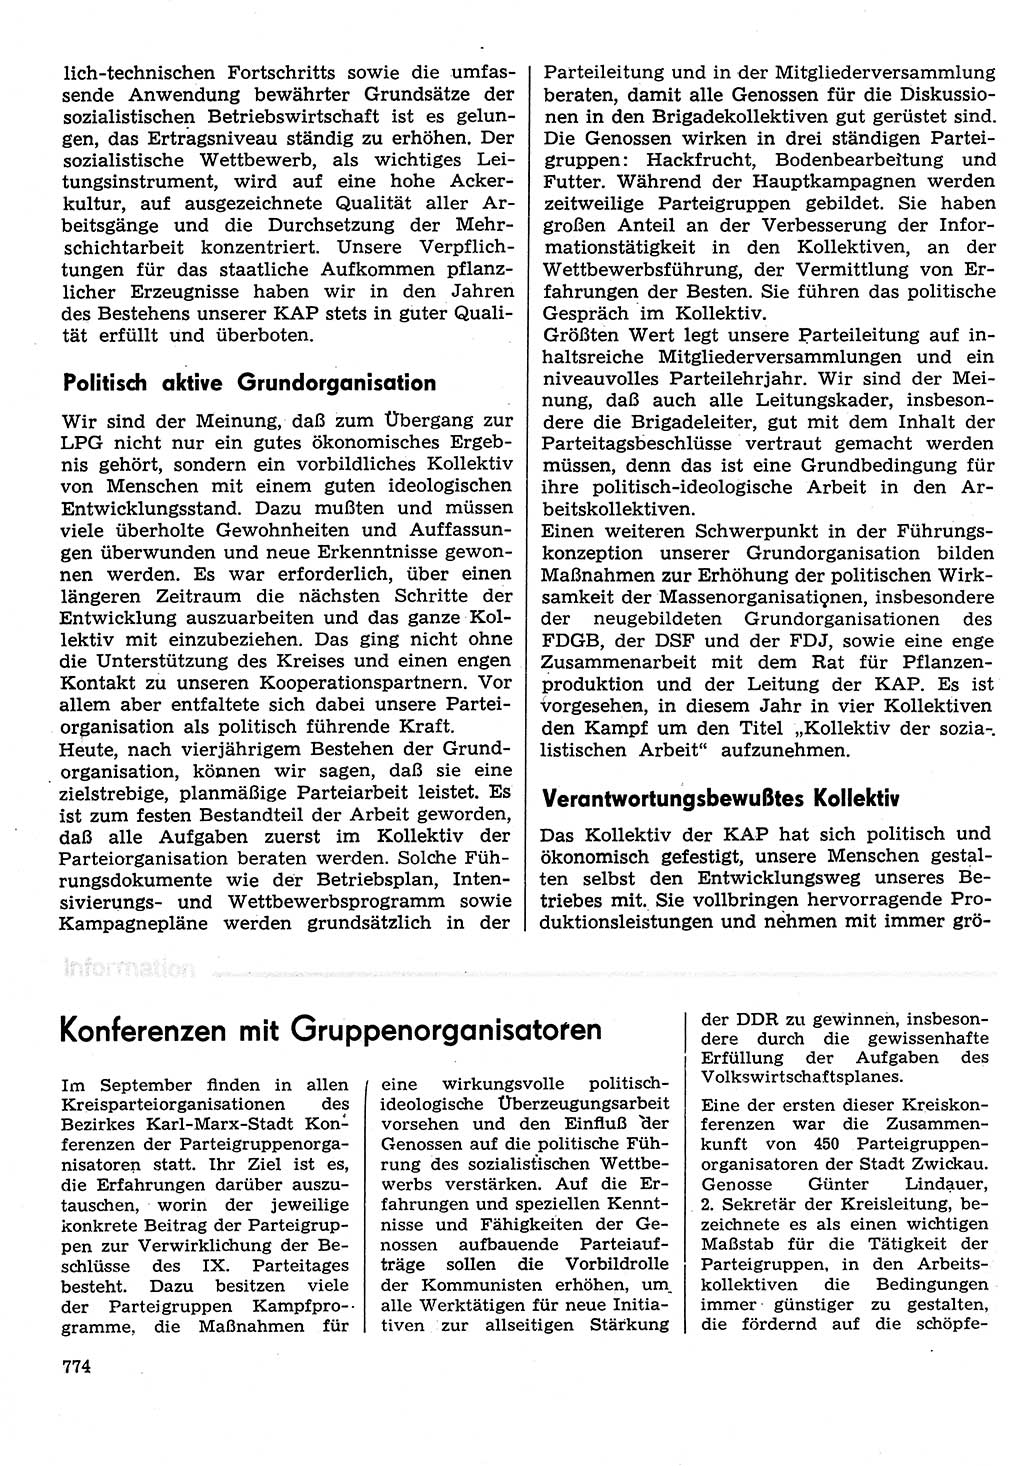 Neuer Weg (NW), Organ des Zentralkomitees (ZK) der SED (Sozialistische Einheitspartei Deutschlands) für Fragen des Parteilebens, 31. Jahrgang [Deutsche Demokratische Republik (DDR)] 1976, Seite 774 (NW ZK SED DDR 1976, S. 774)